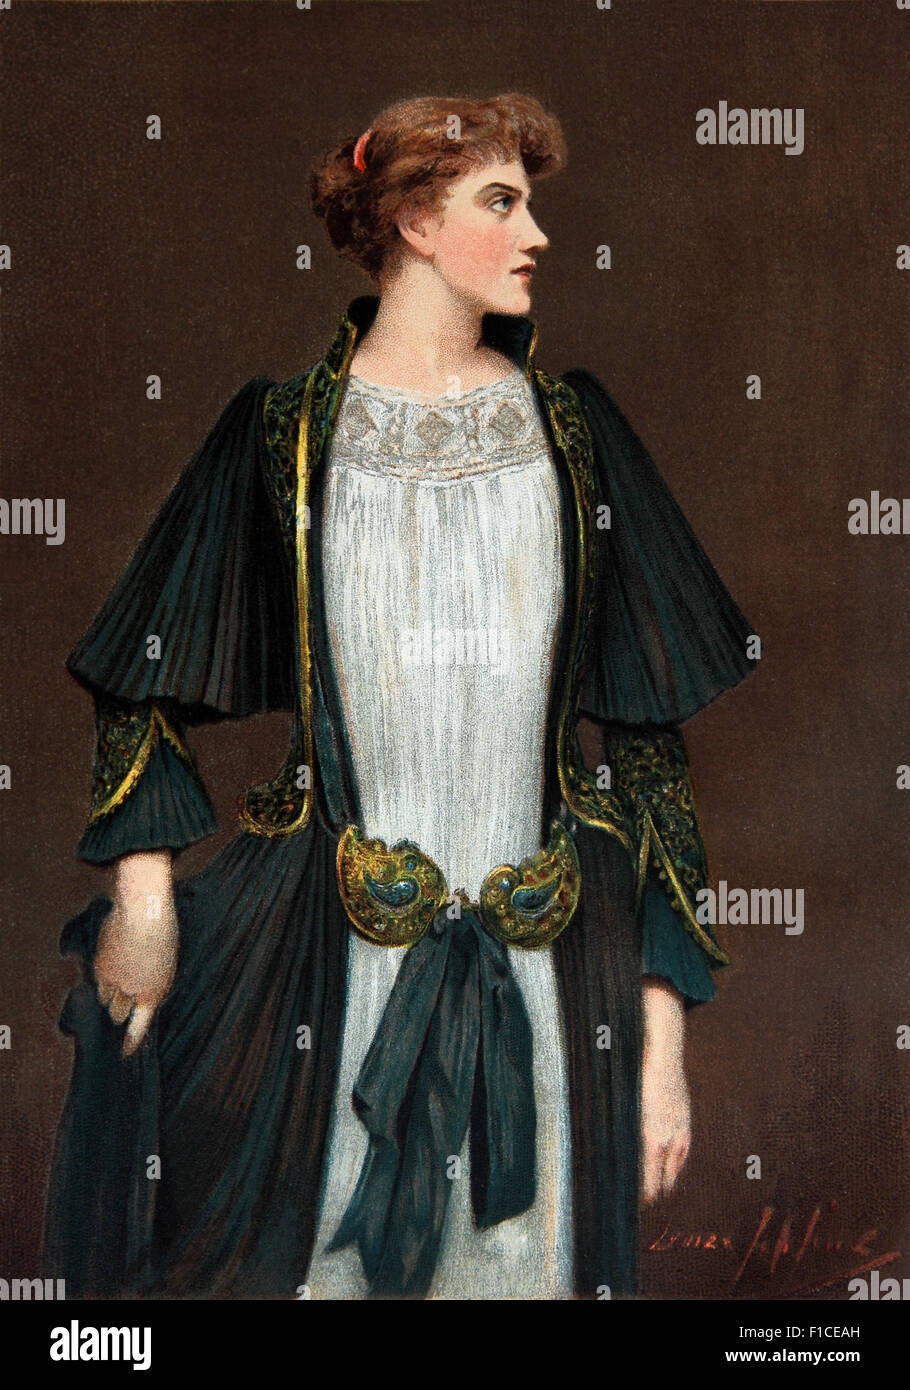 Louise Jopling huile sur toile 'cher Lady dédain' exposé à la Royal Academy en 1891 Banque D'Images